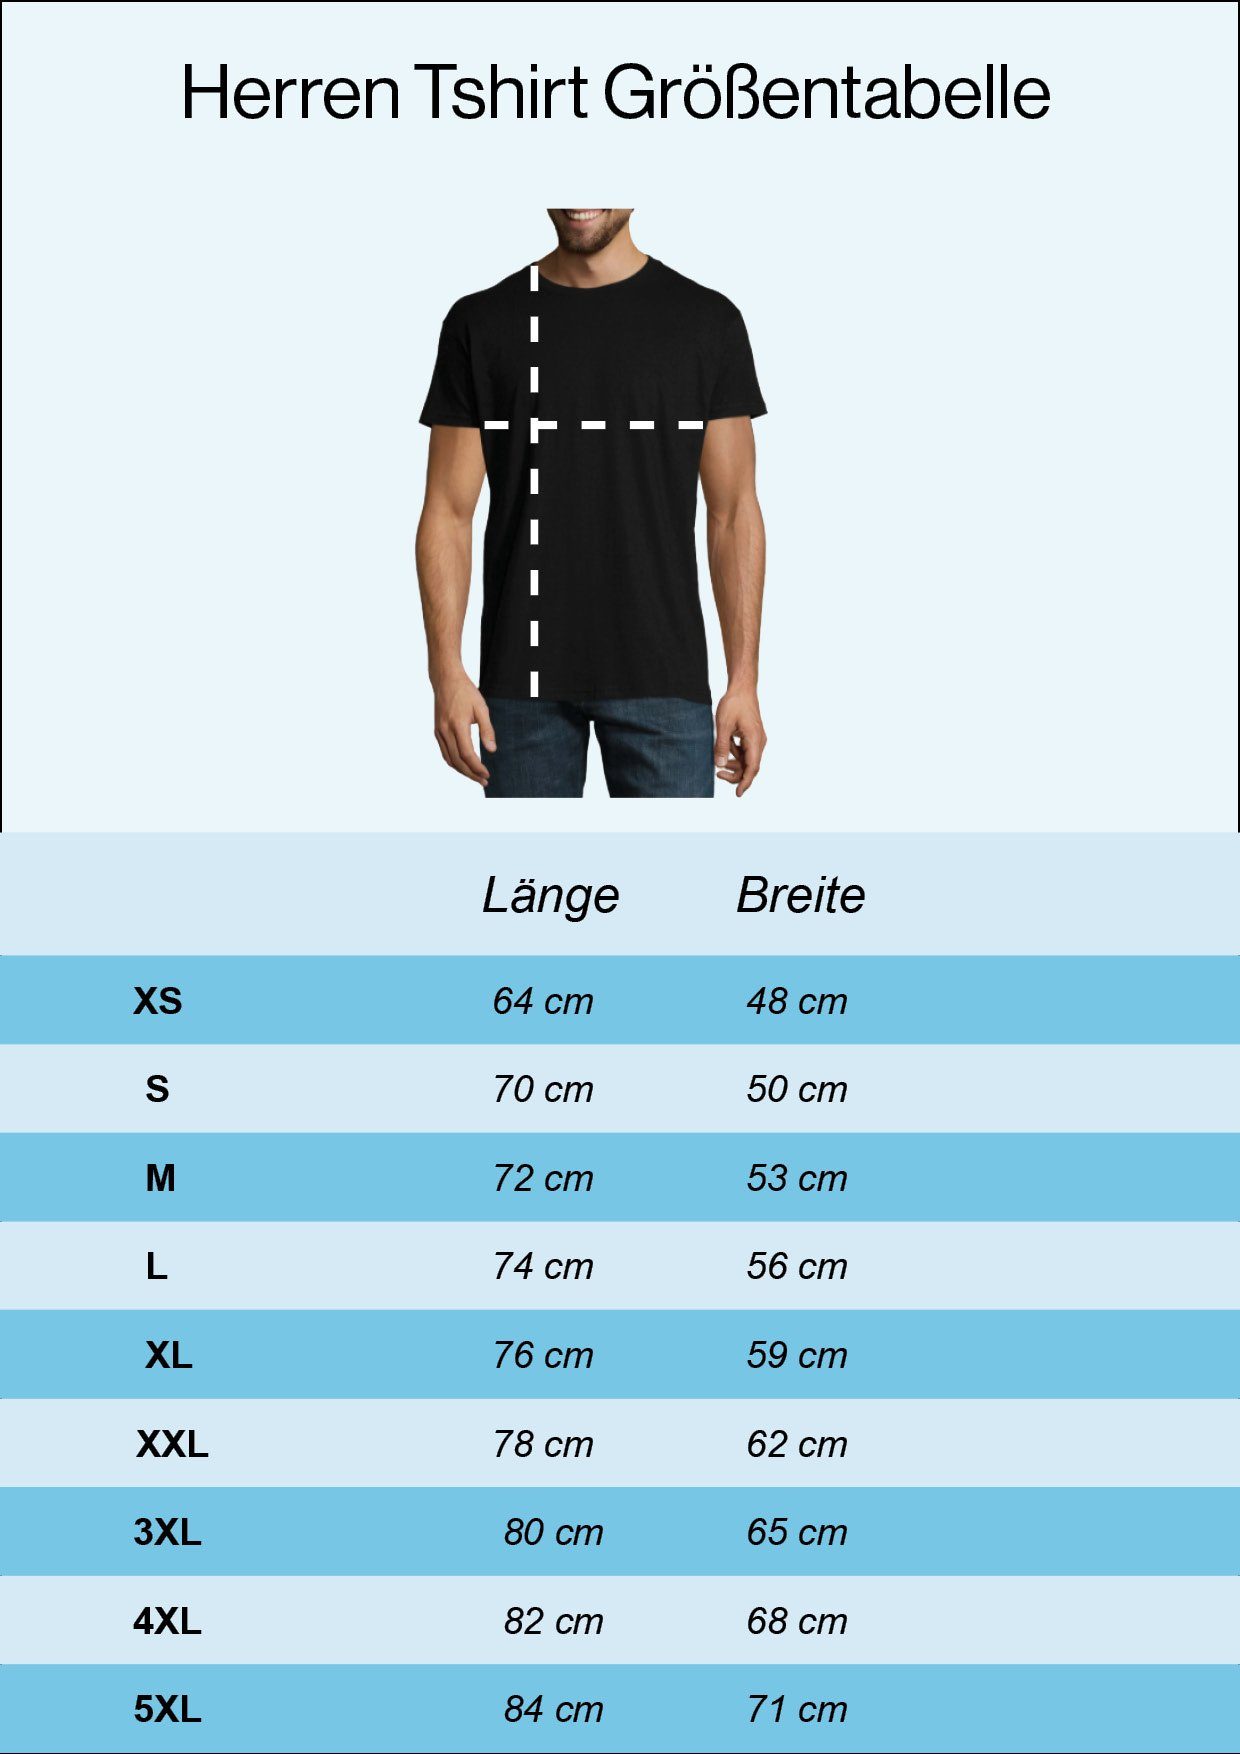 Designz mit T-Shirt Navyblau Shirt Sangre Por Sangre trendigem Youth Herren Frontprint